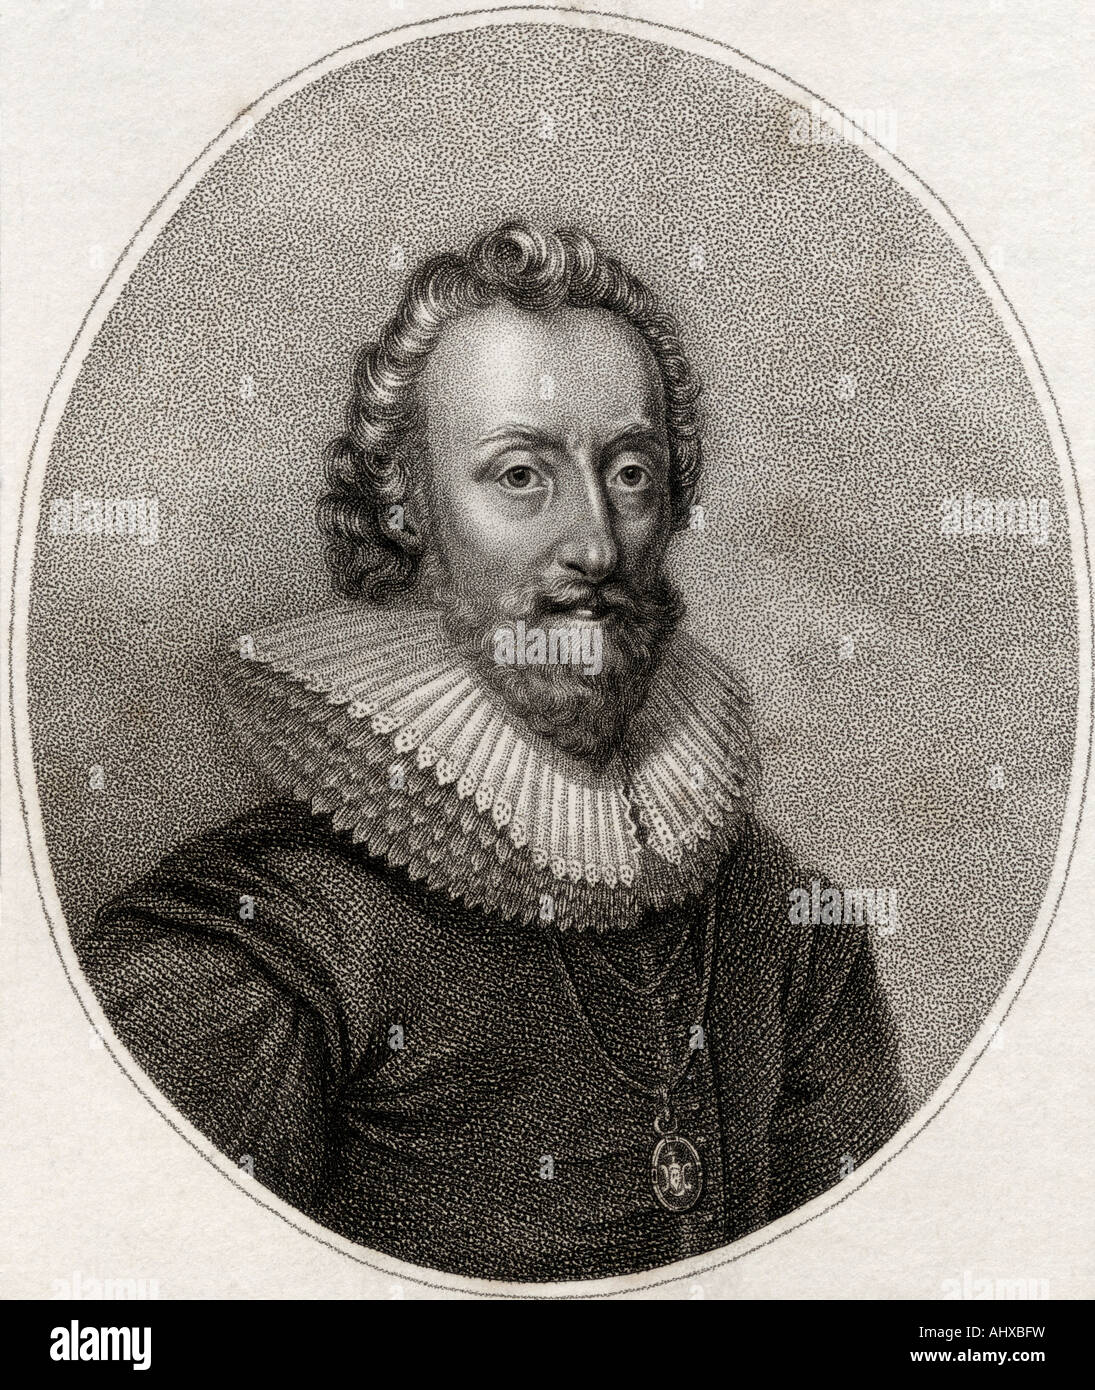 William Alexander, conte di Stirling, c.1570 - 1640. Colonizzatore scozzese della Nuova Scozia. Foto Stock